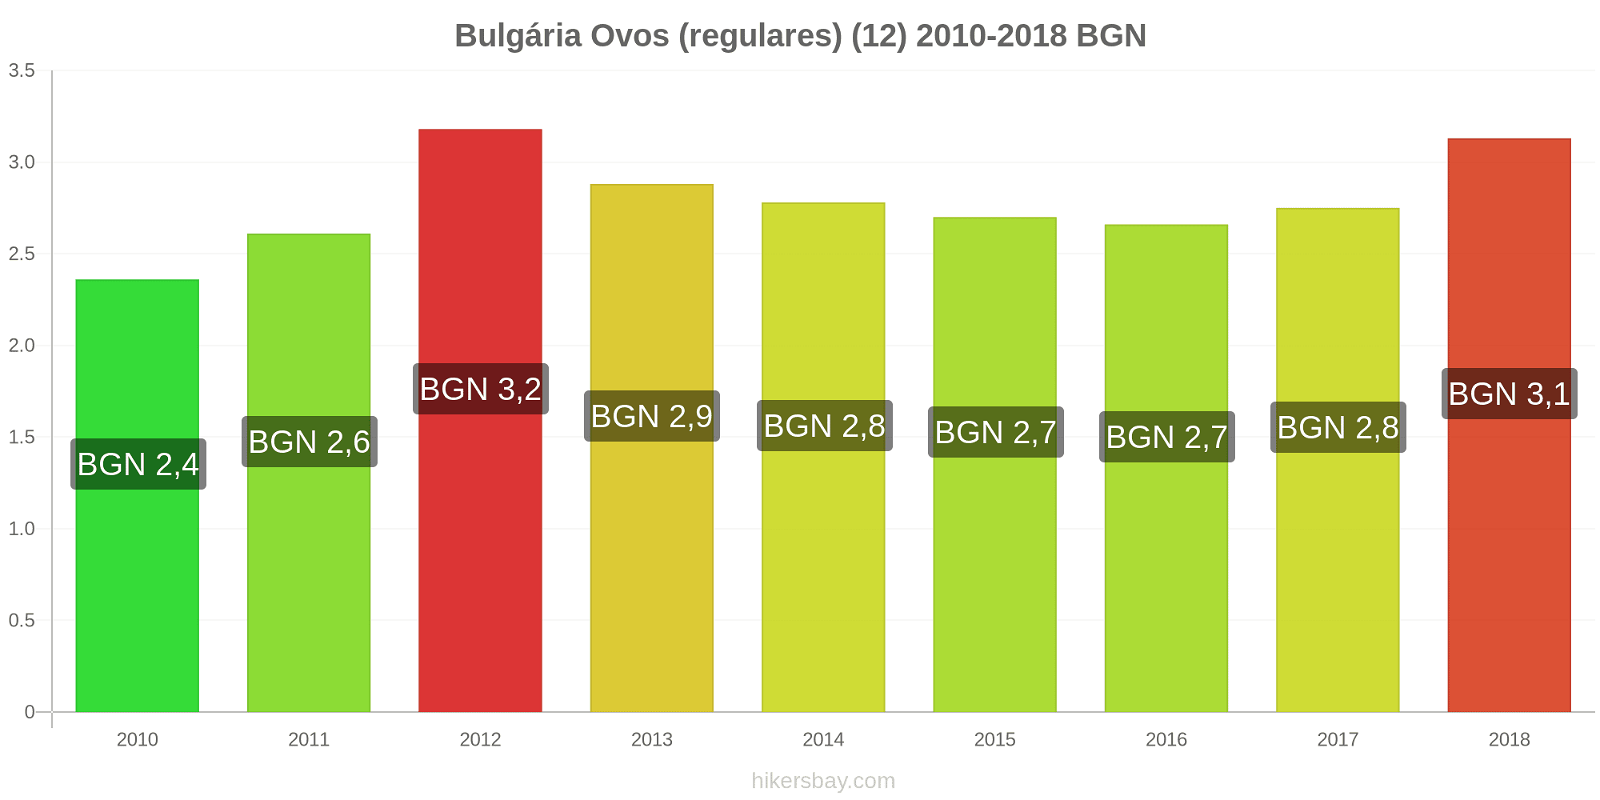 Bulgária mudanças de preços Ovos (normais) (12 unidades) hikersbay.com